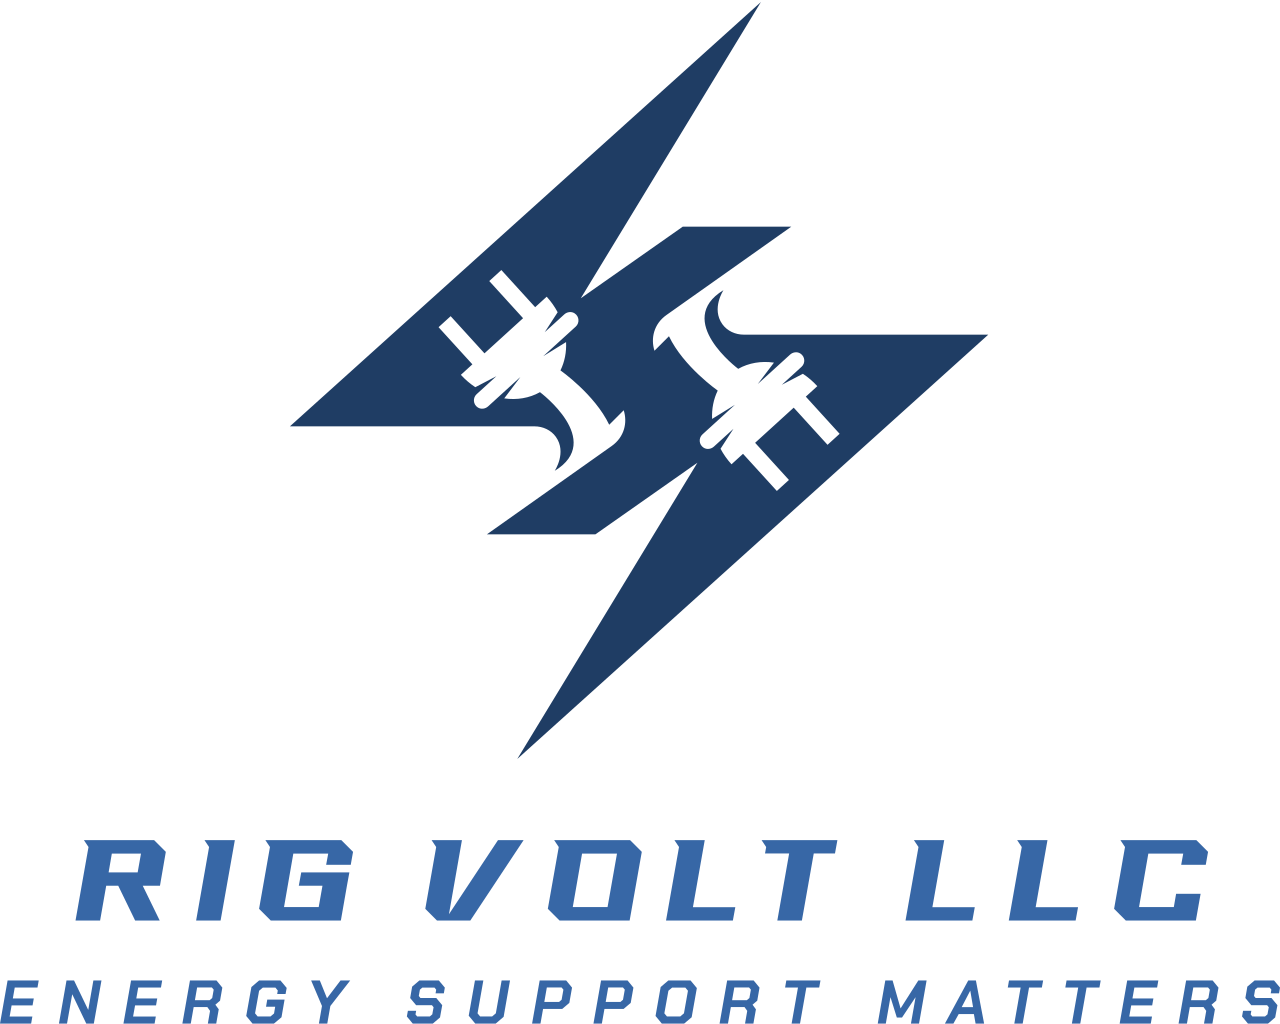 Rig Volt LLC's logo